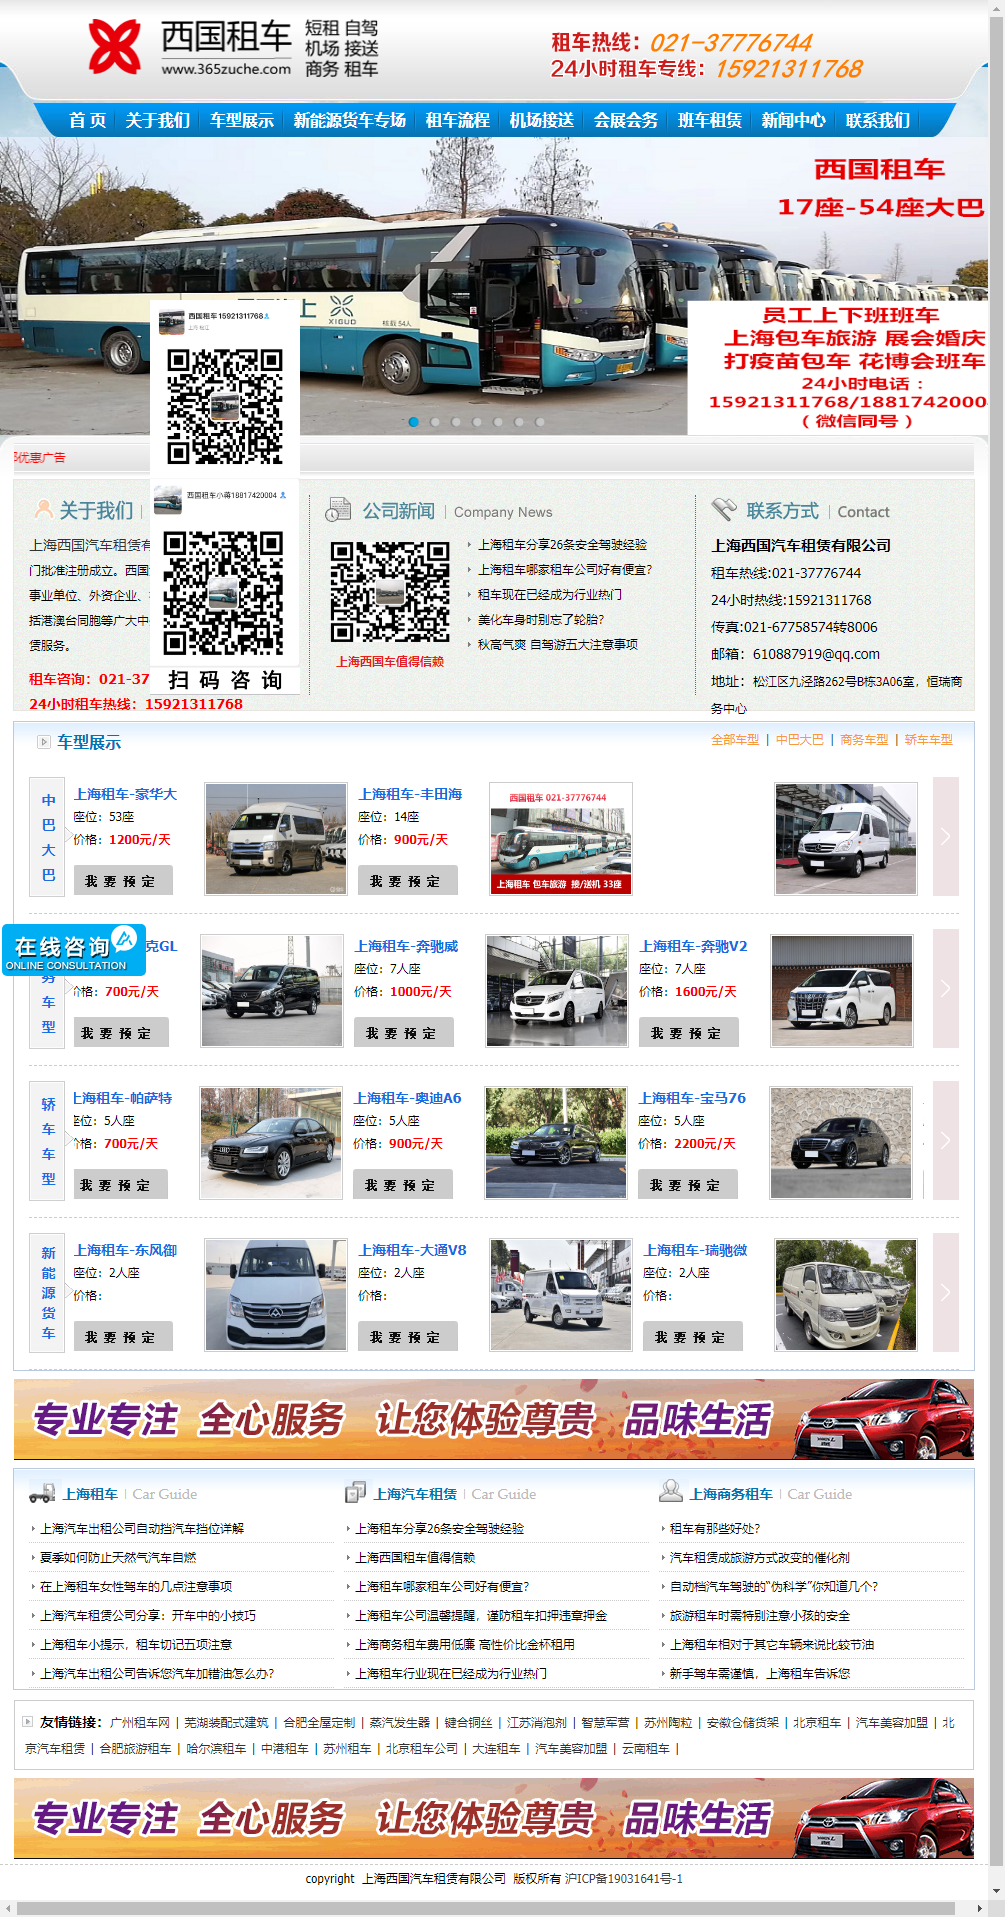 上海西国汽车租赁有限公司网站案例